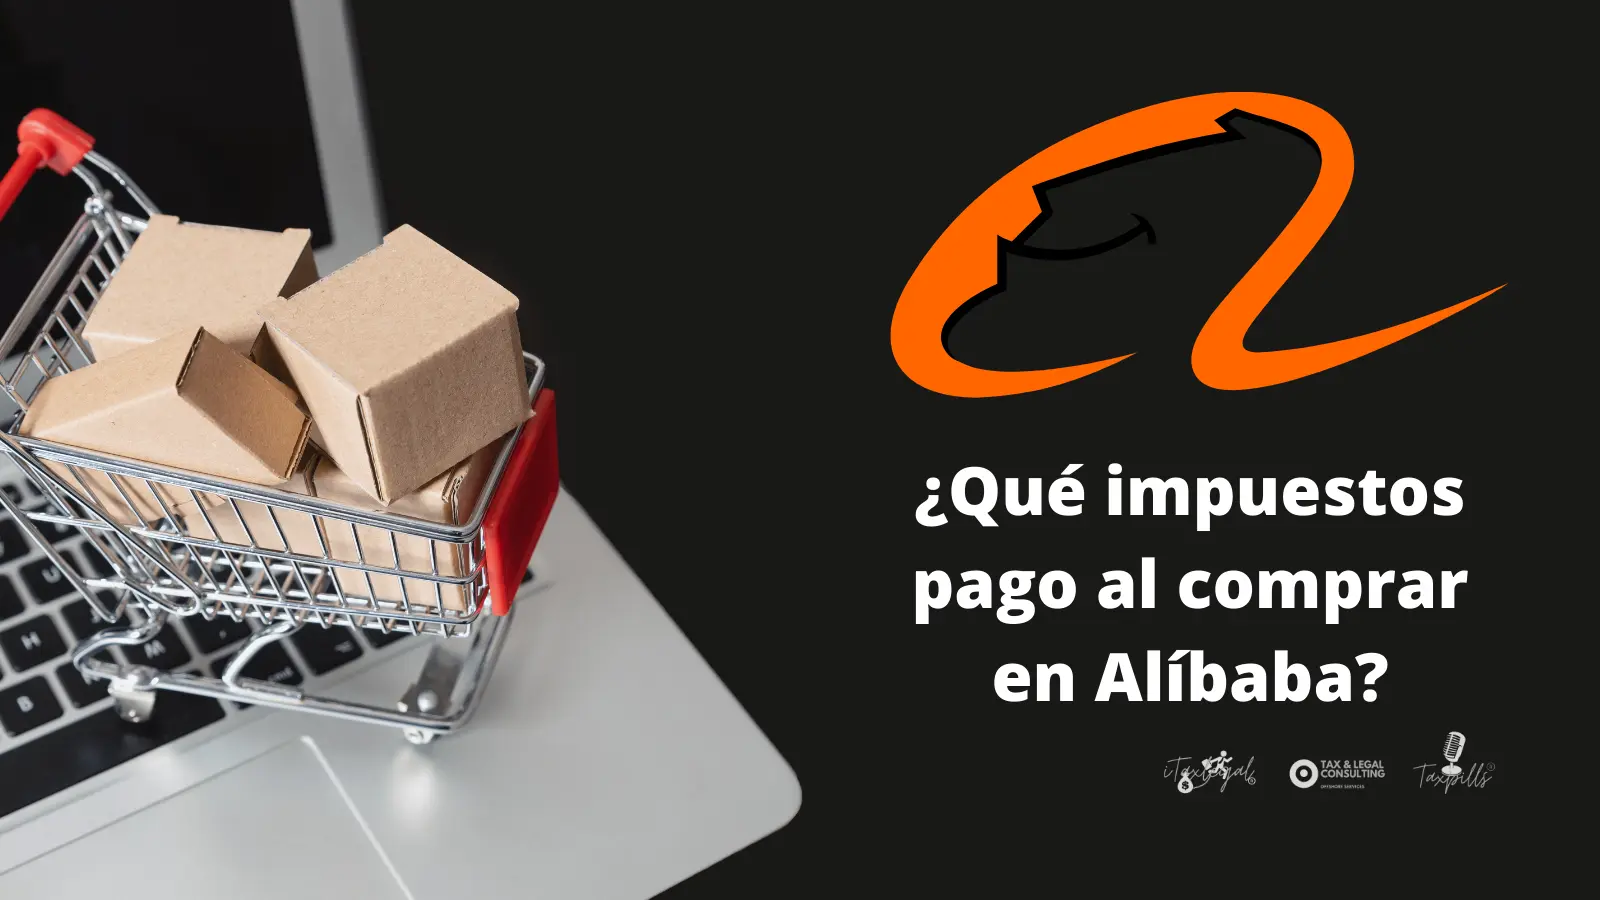 alibaba fletes impuestos - Cuánto impuesto paga Alibaba